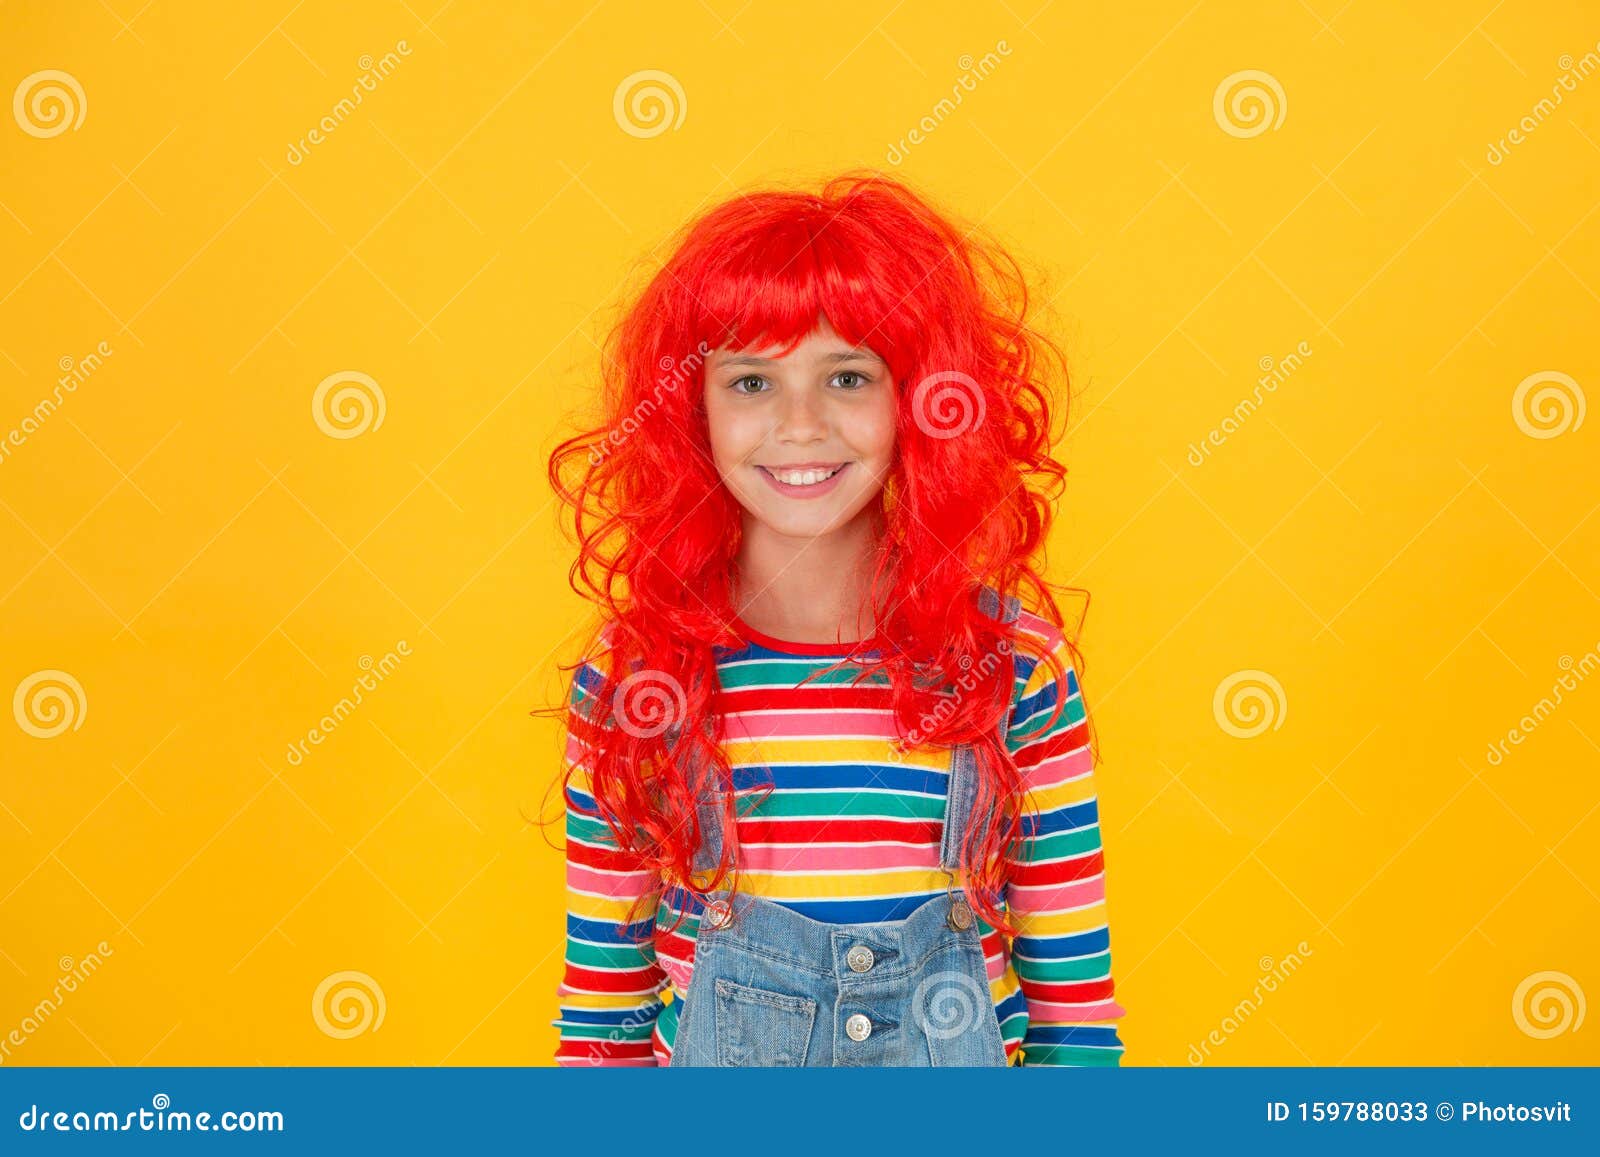 Злой мальчик в рыжем парике